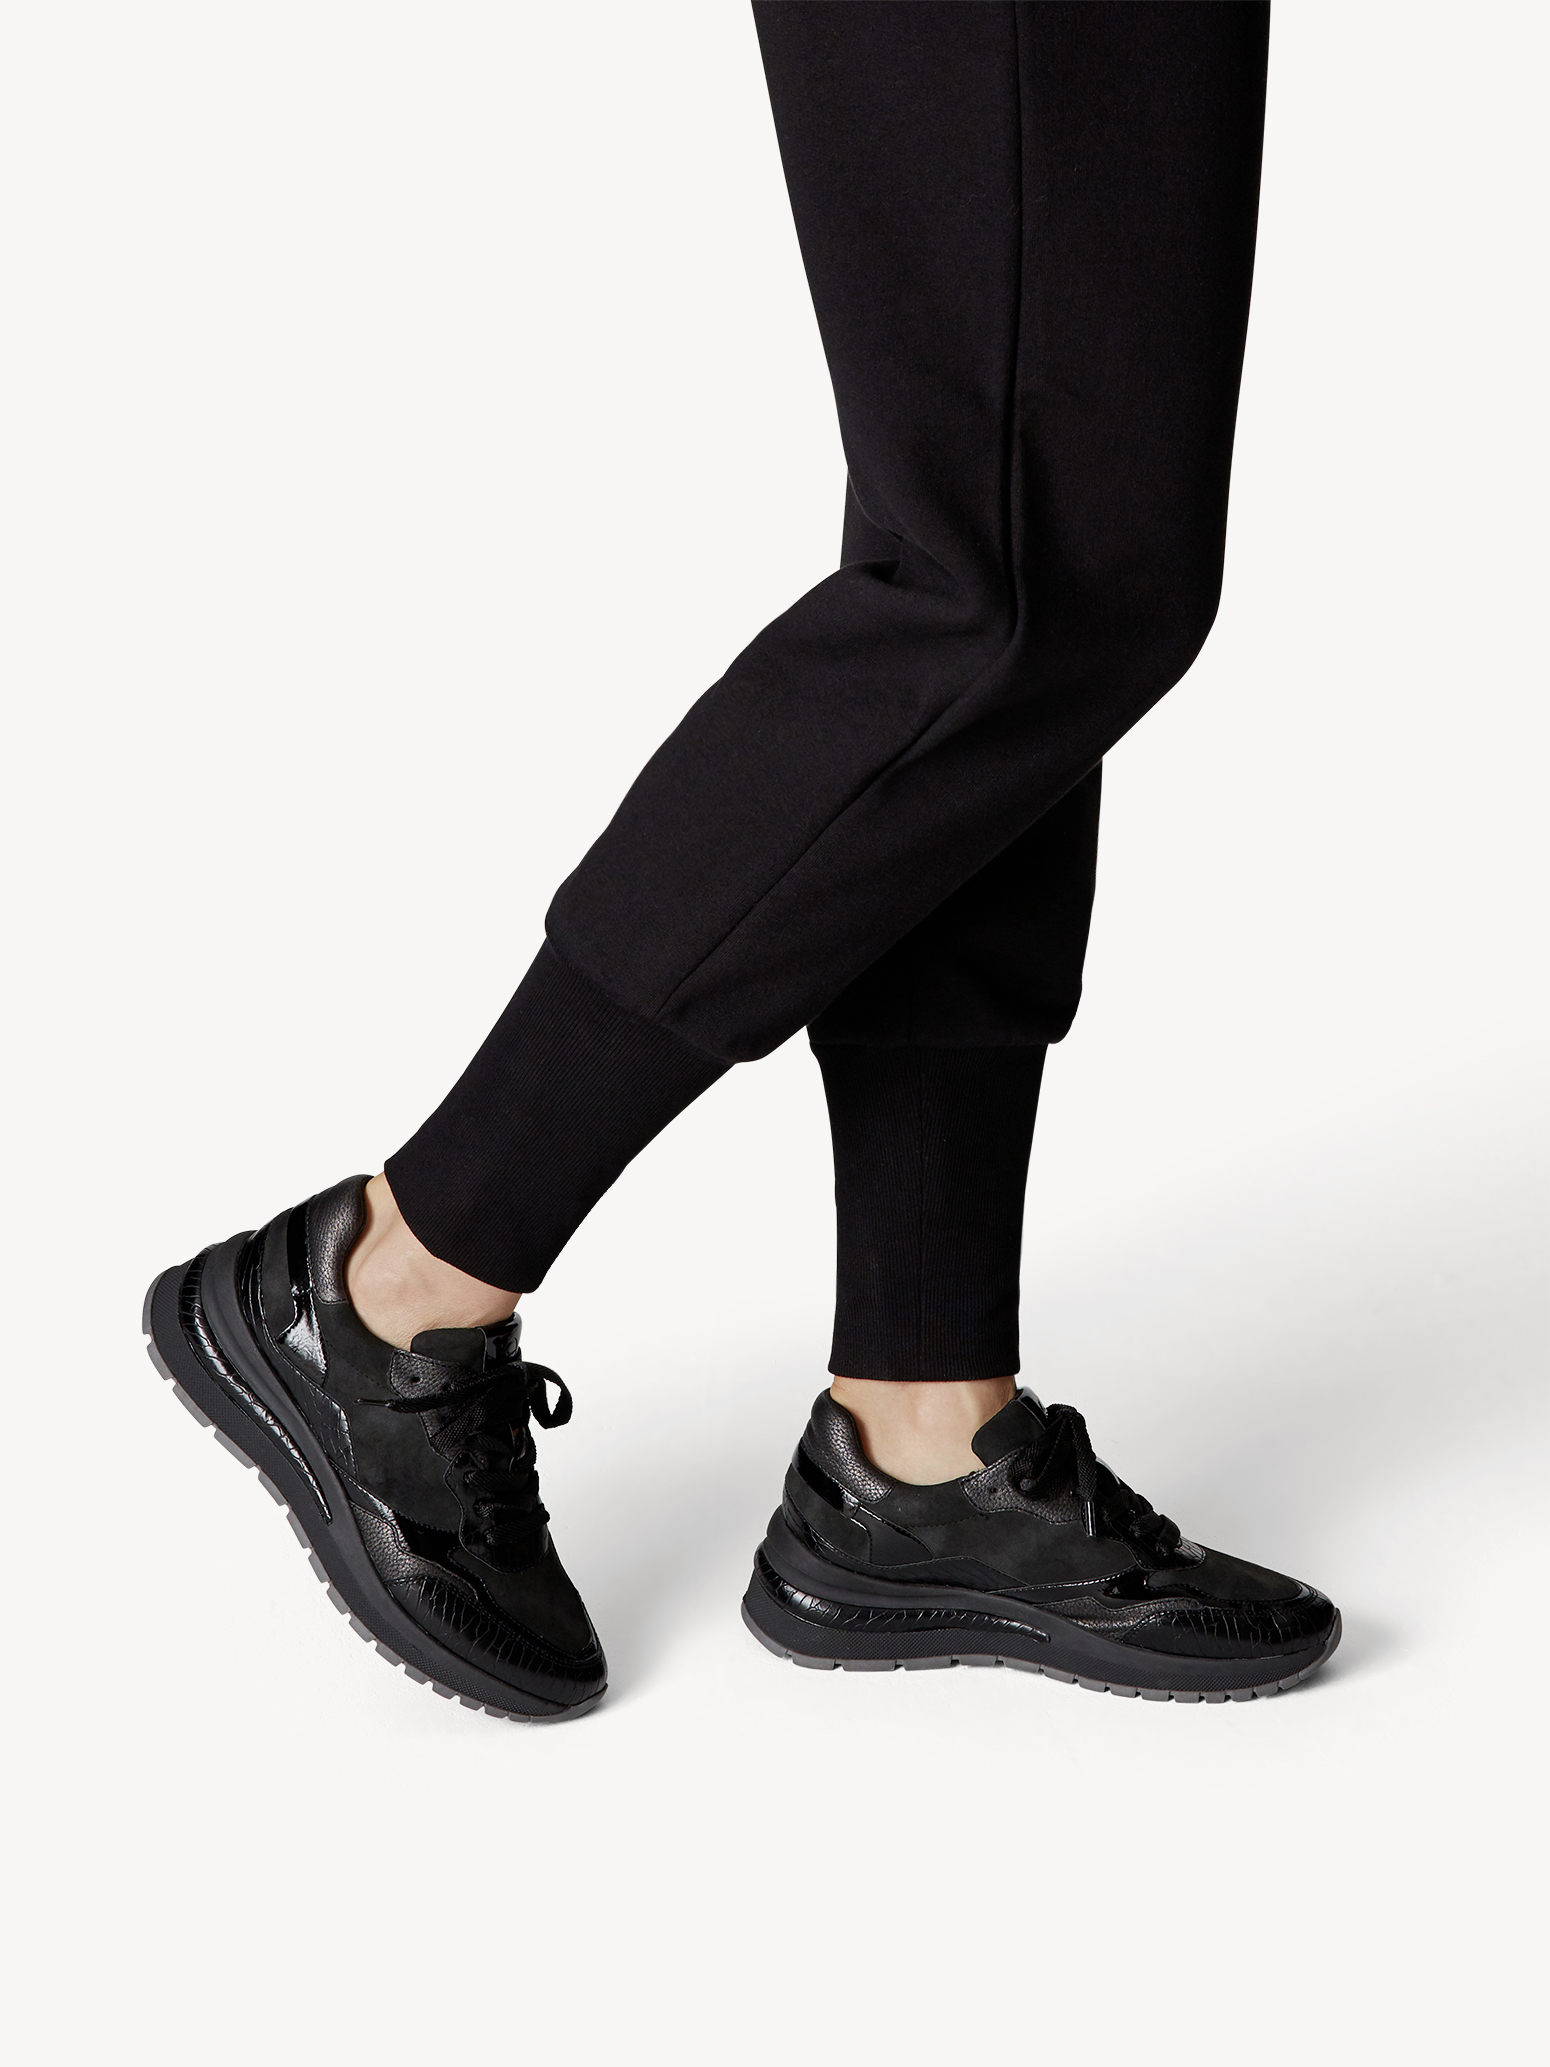 Ботинки на шнурках женские (черный комб.) - изображение №1